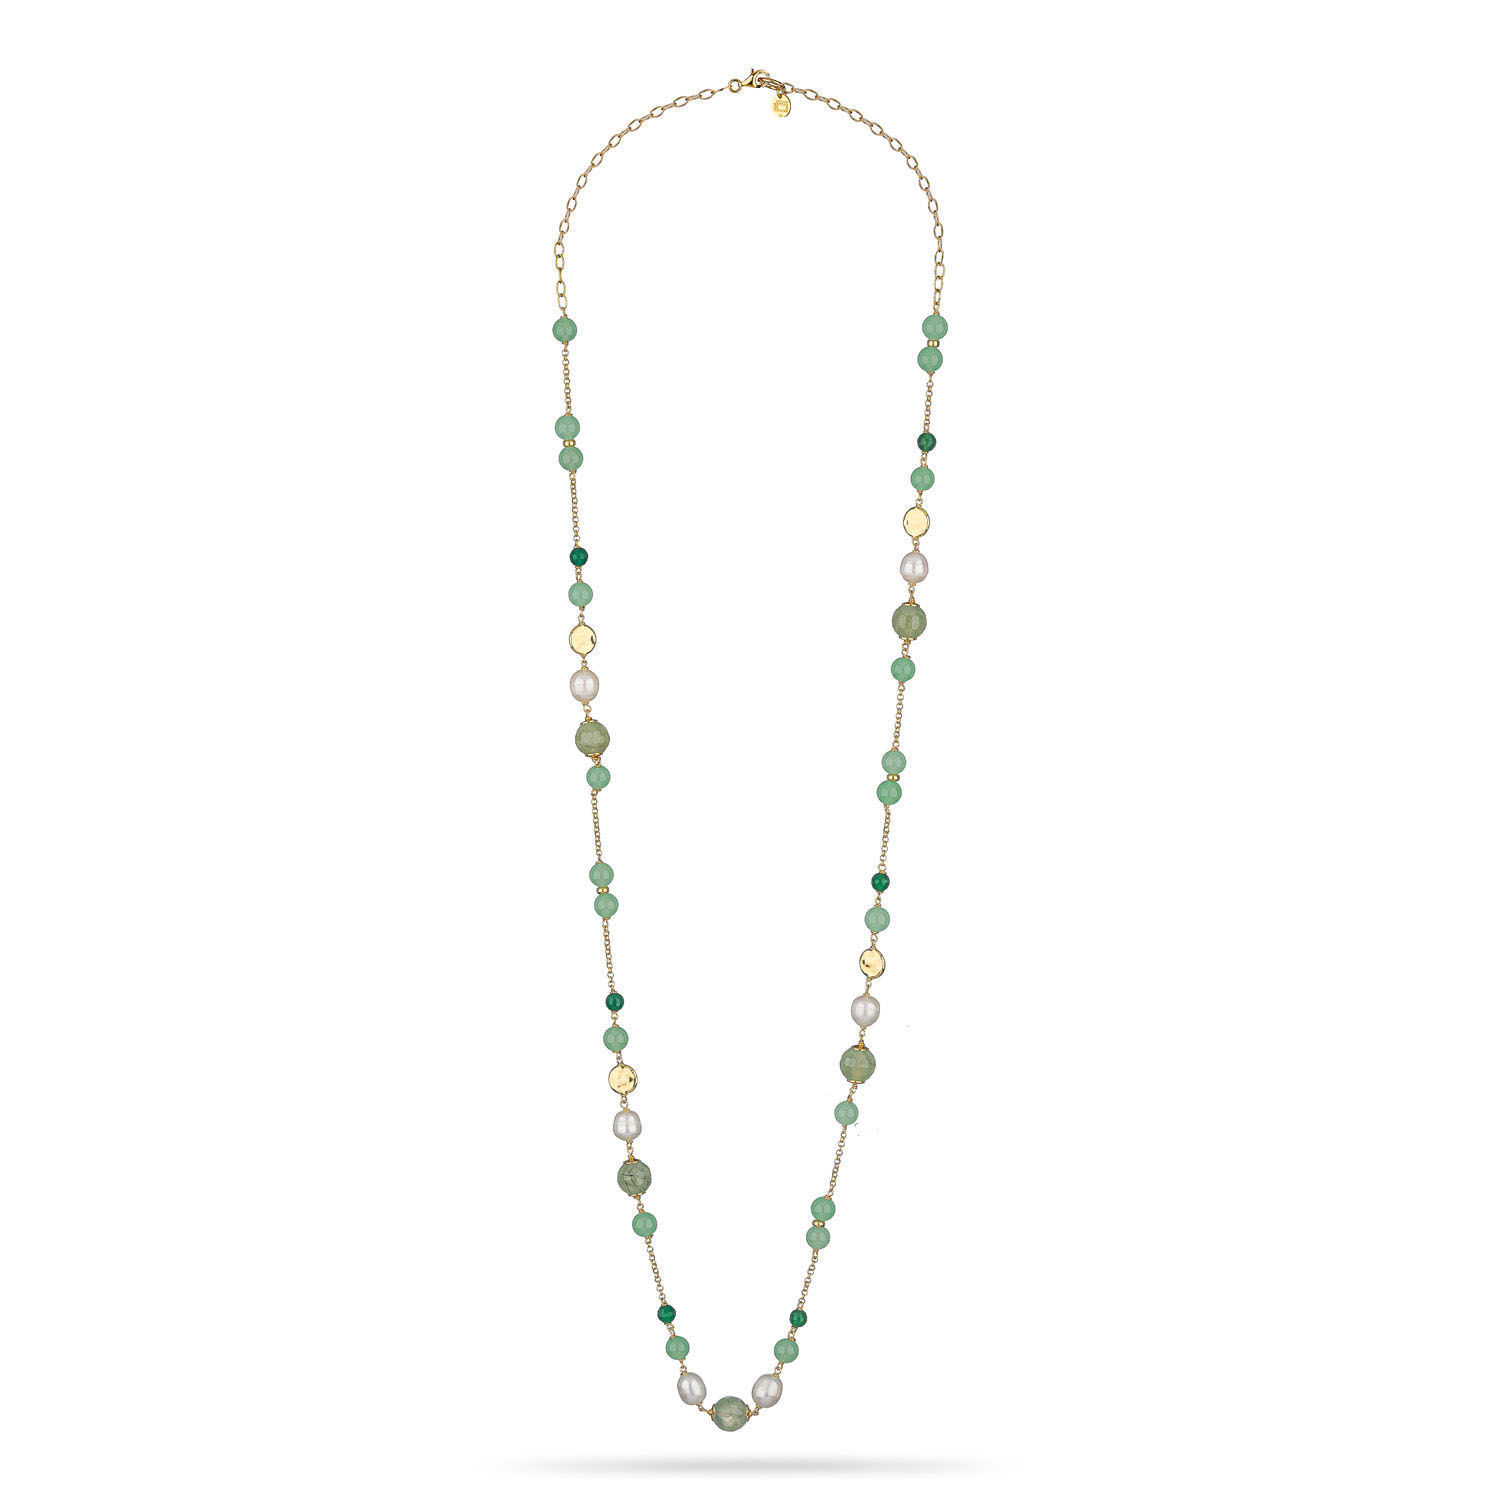 Κολιέ Swing από επιχρυσωμένο ασήμι 925° με πράσινο αχάτη,αβεντουρίνη,cat's eye stone και freshwater pearls